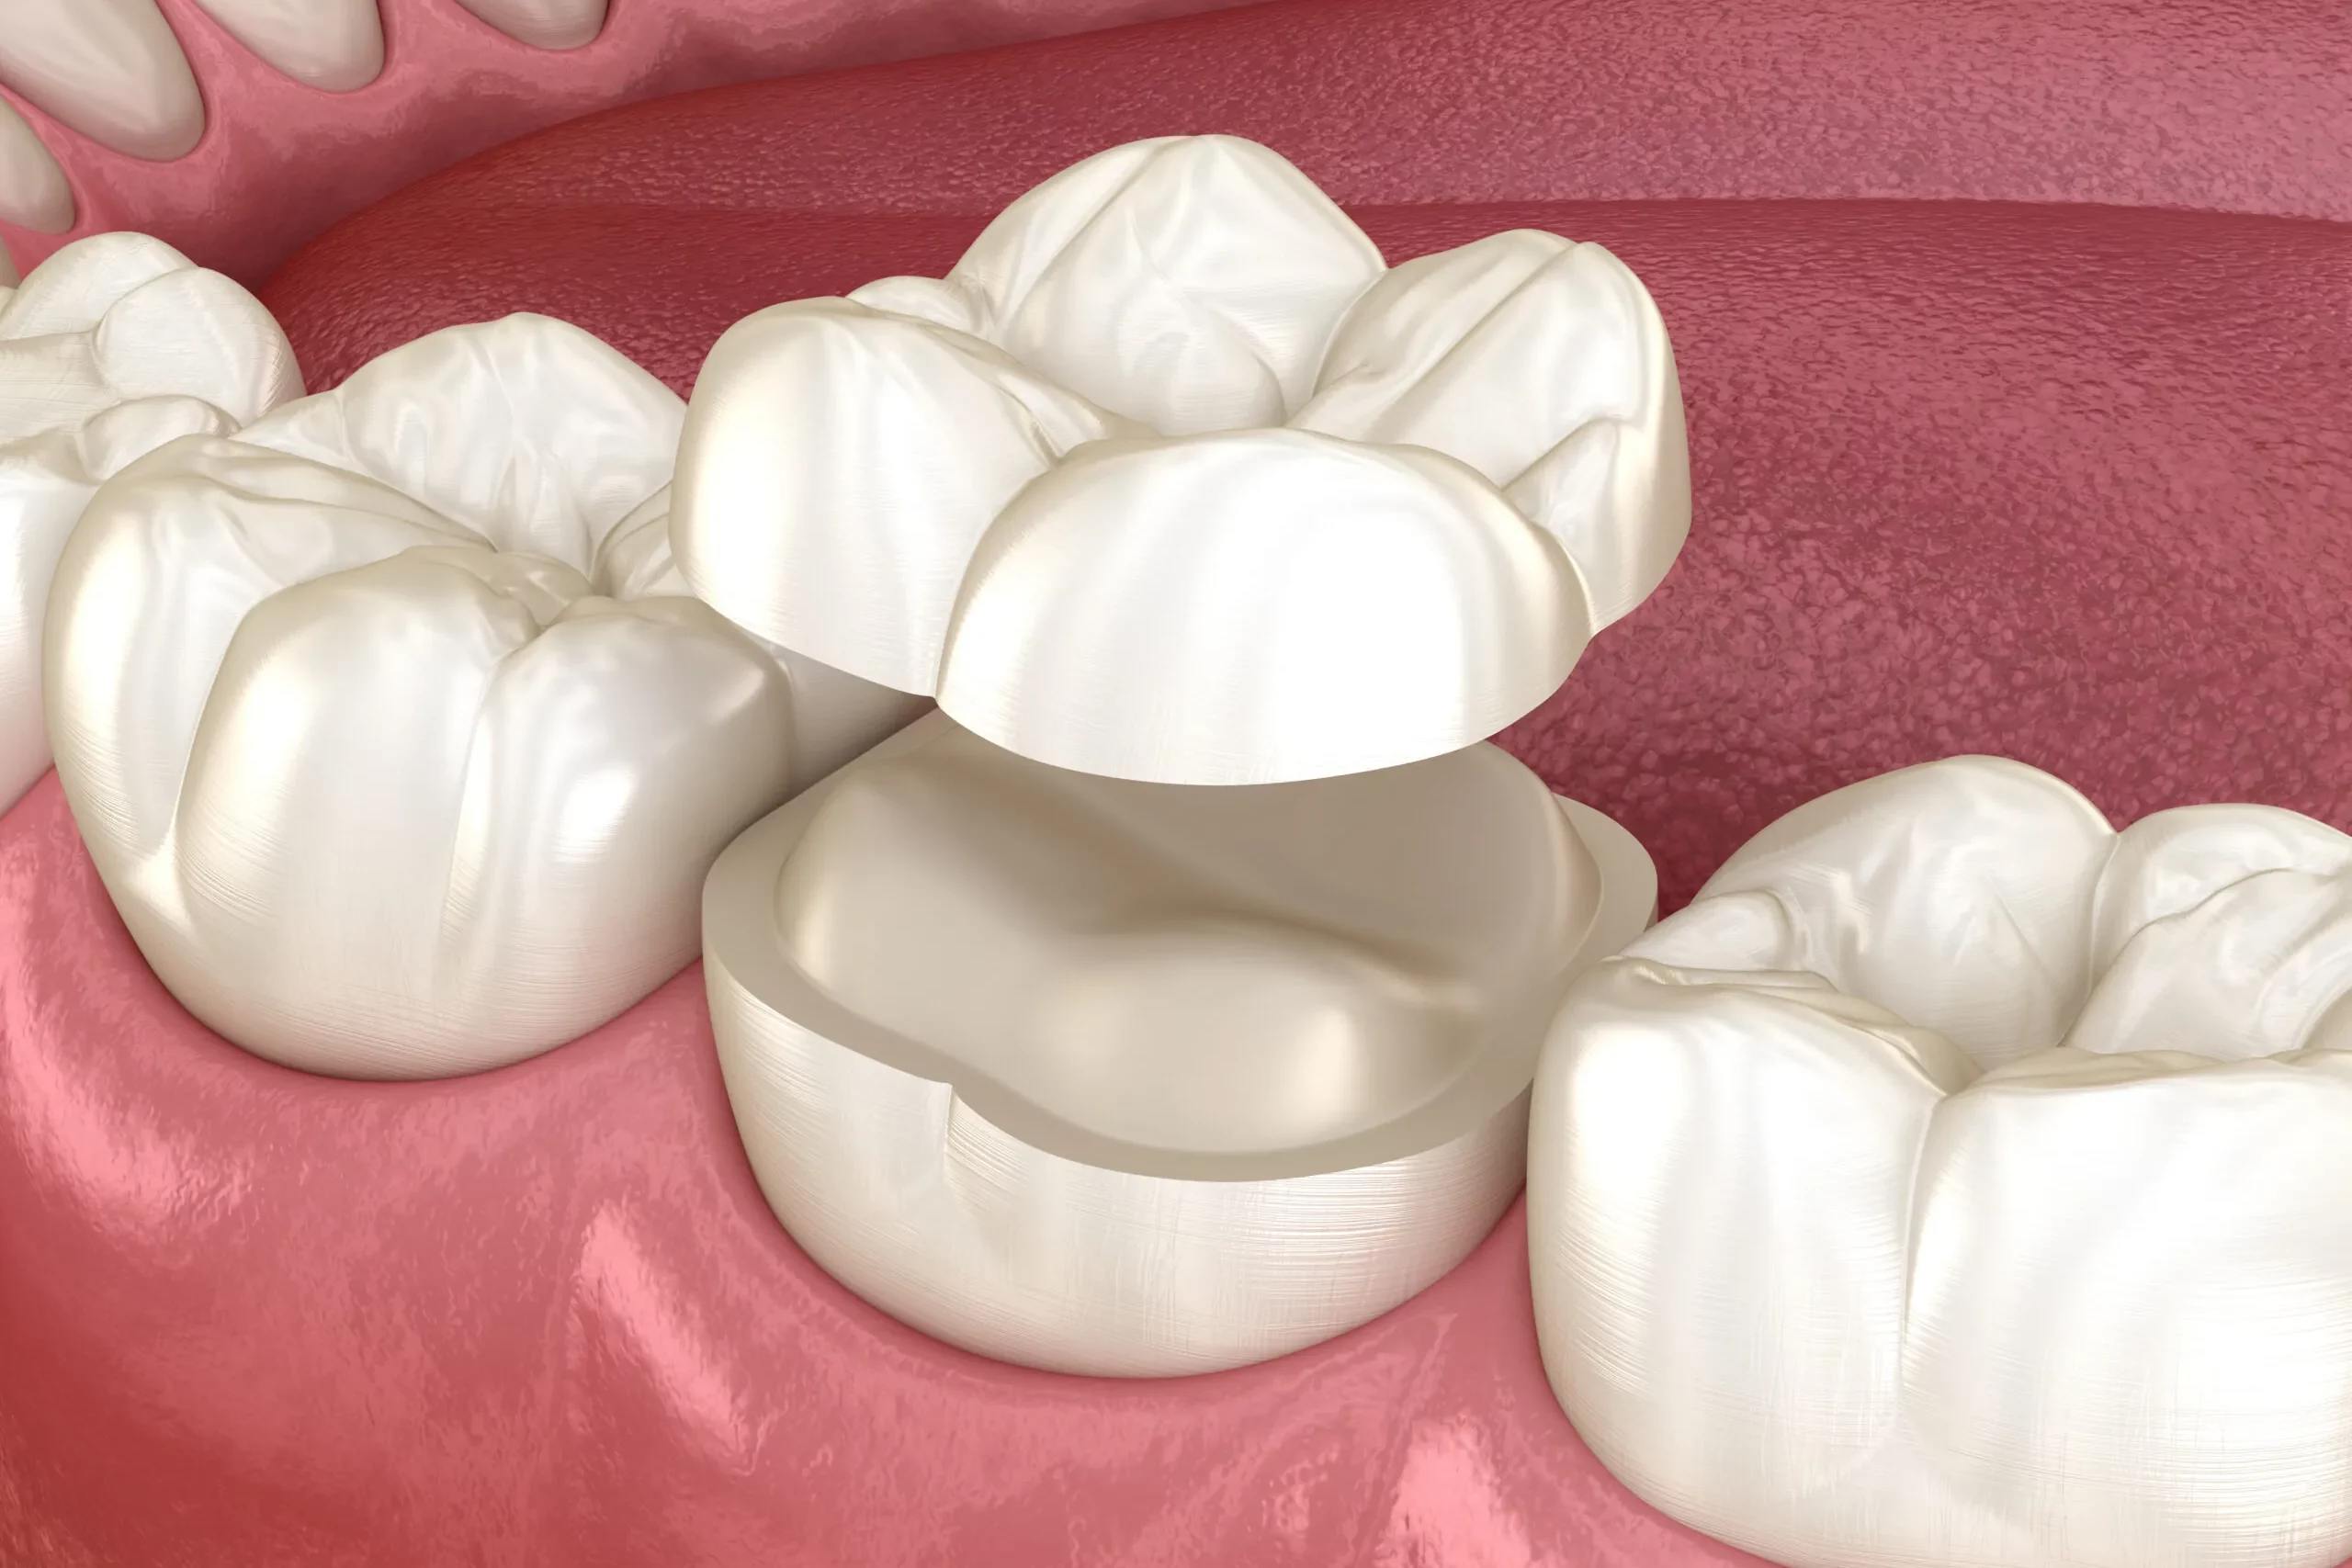 Make a Smile Dental Crowns